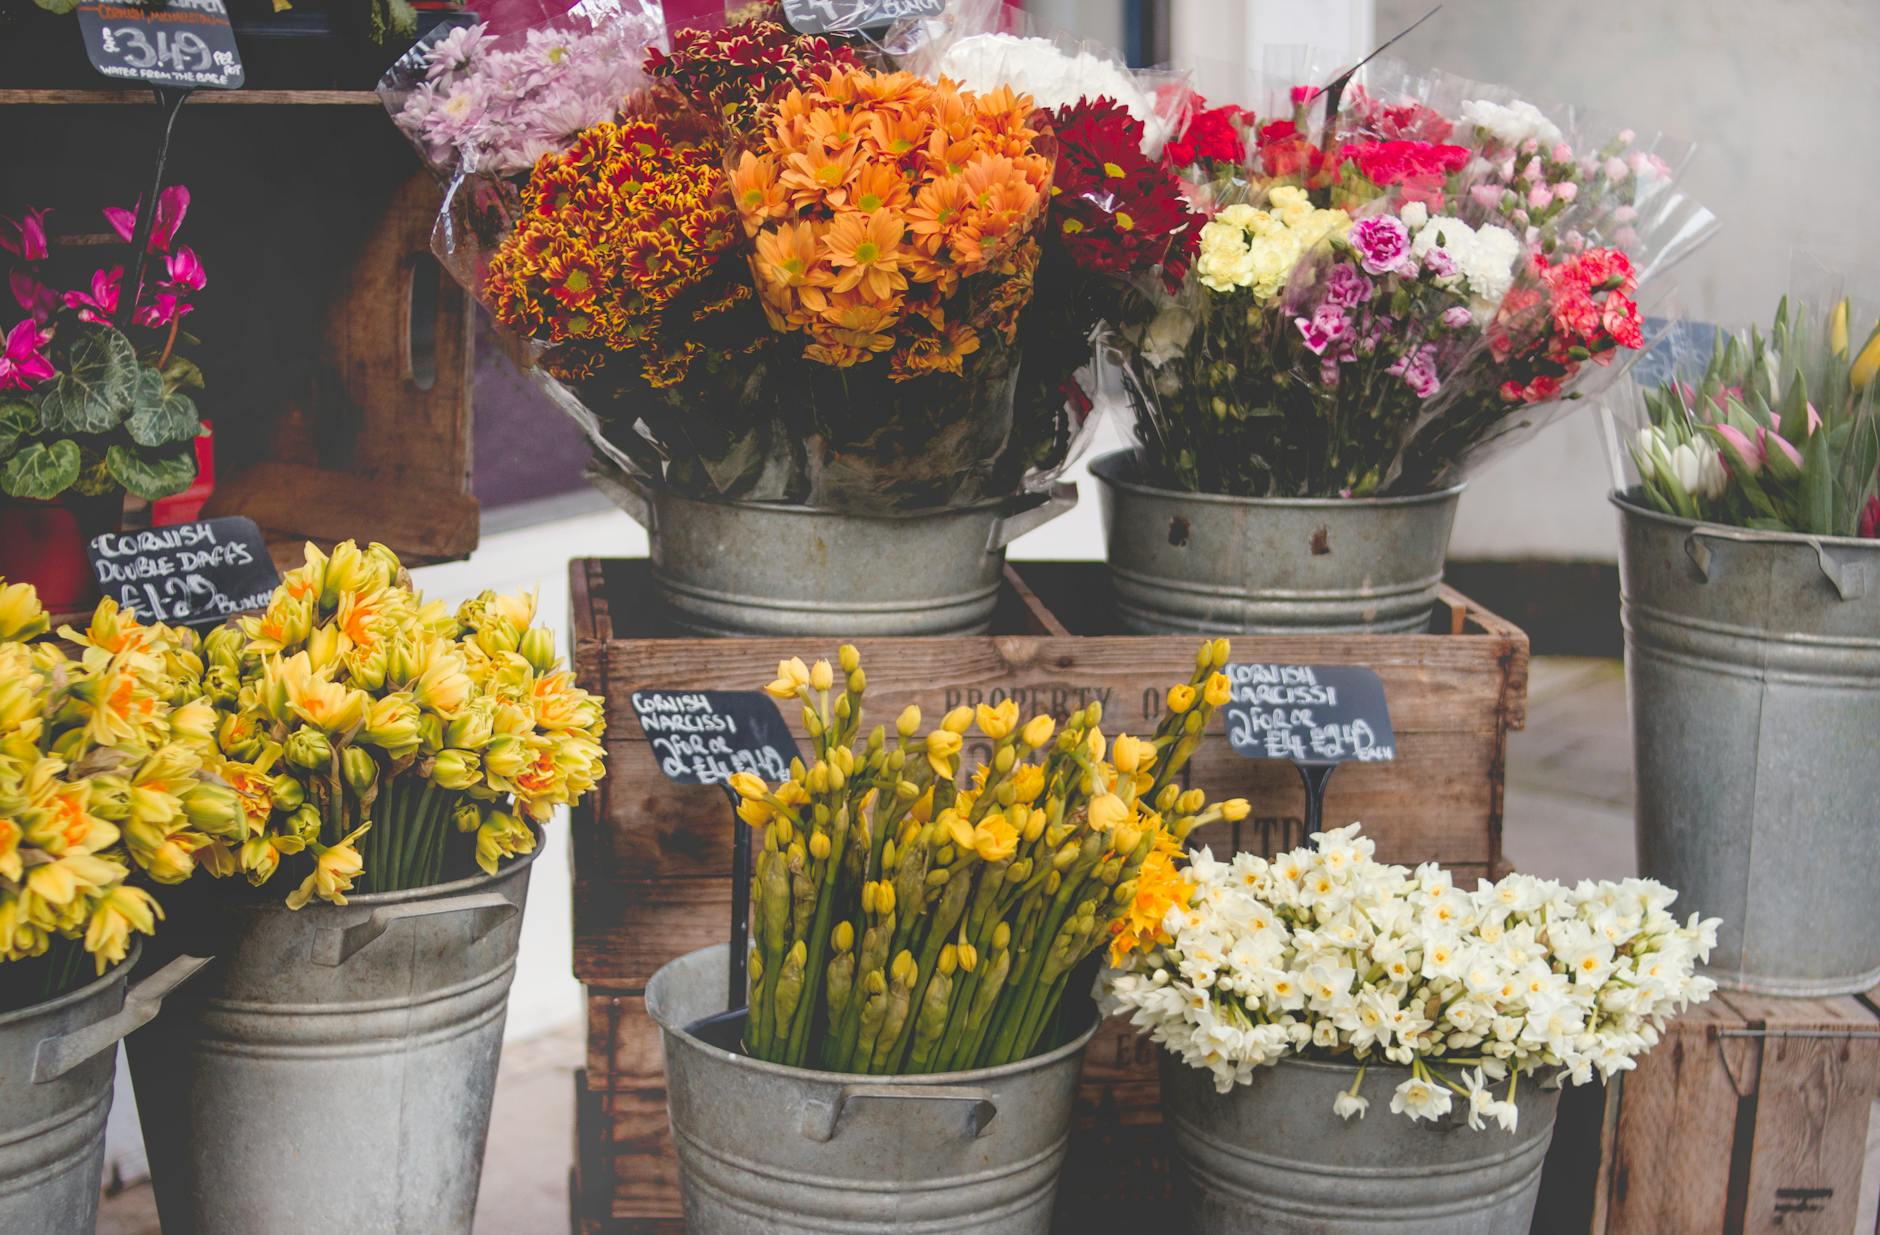 Tentukan florist yang menjual buket bunga berkualitas